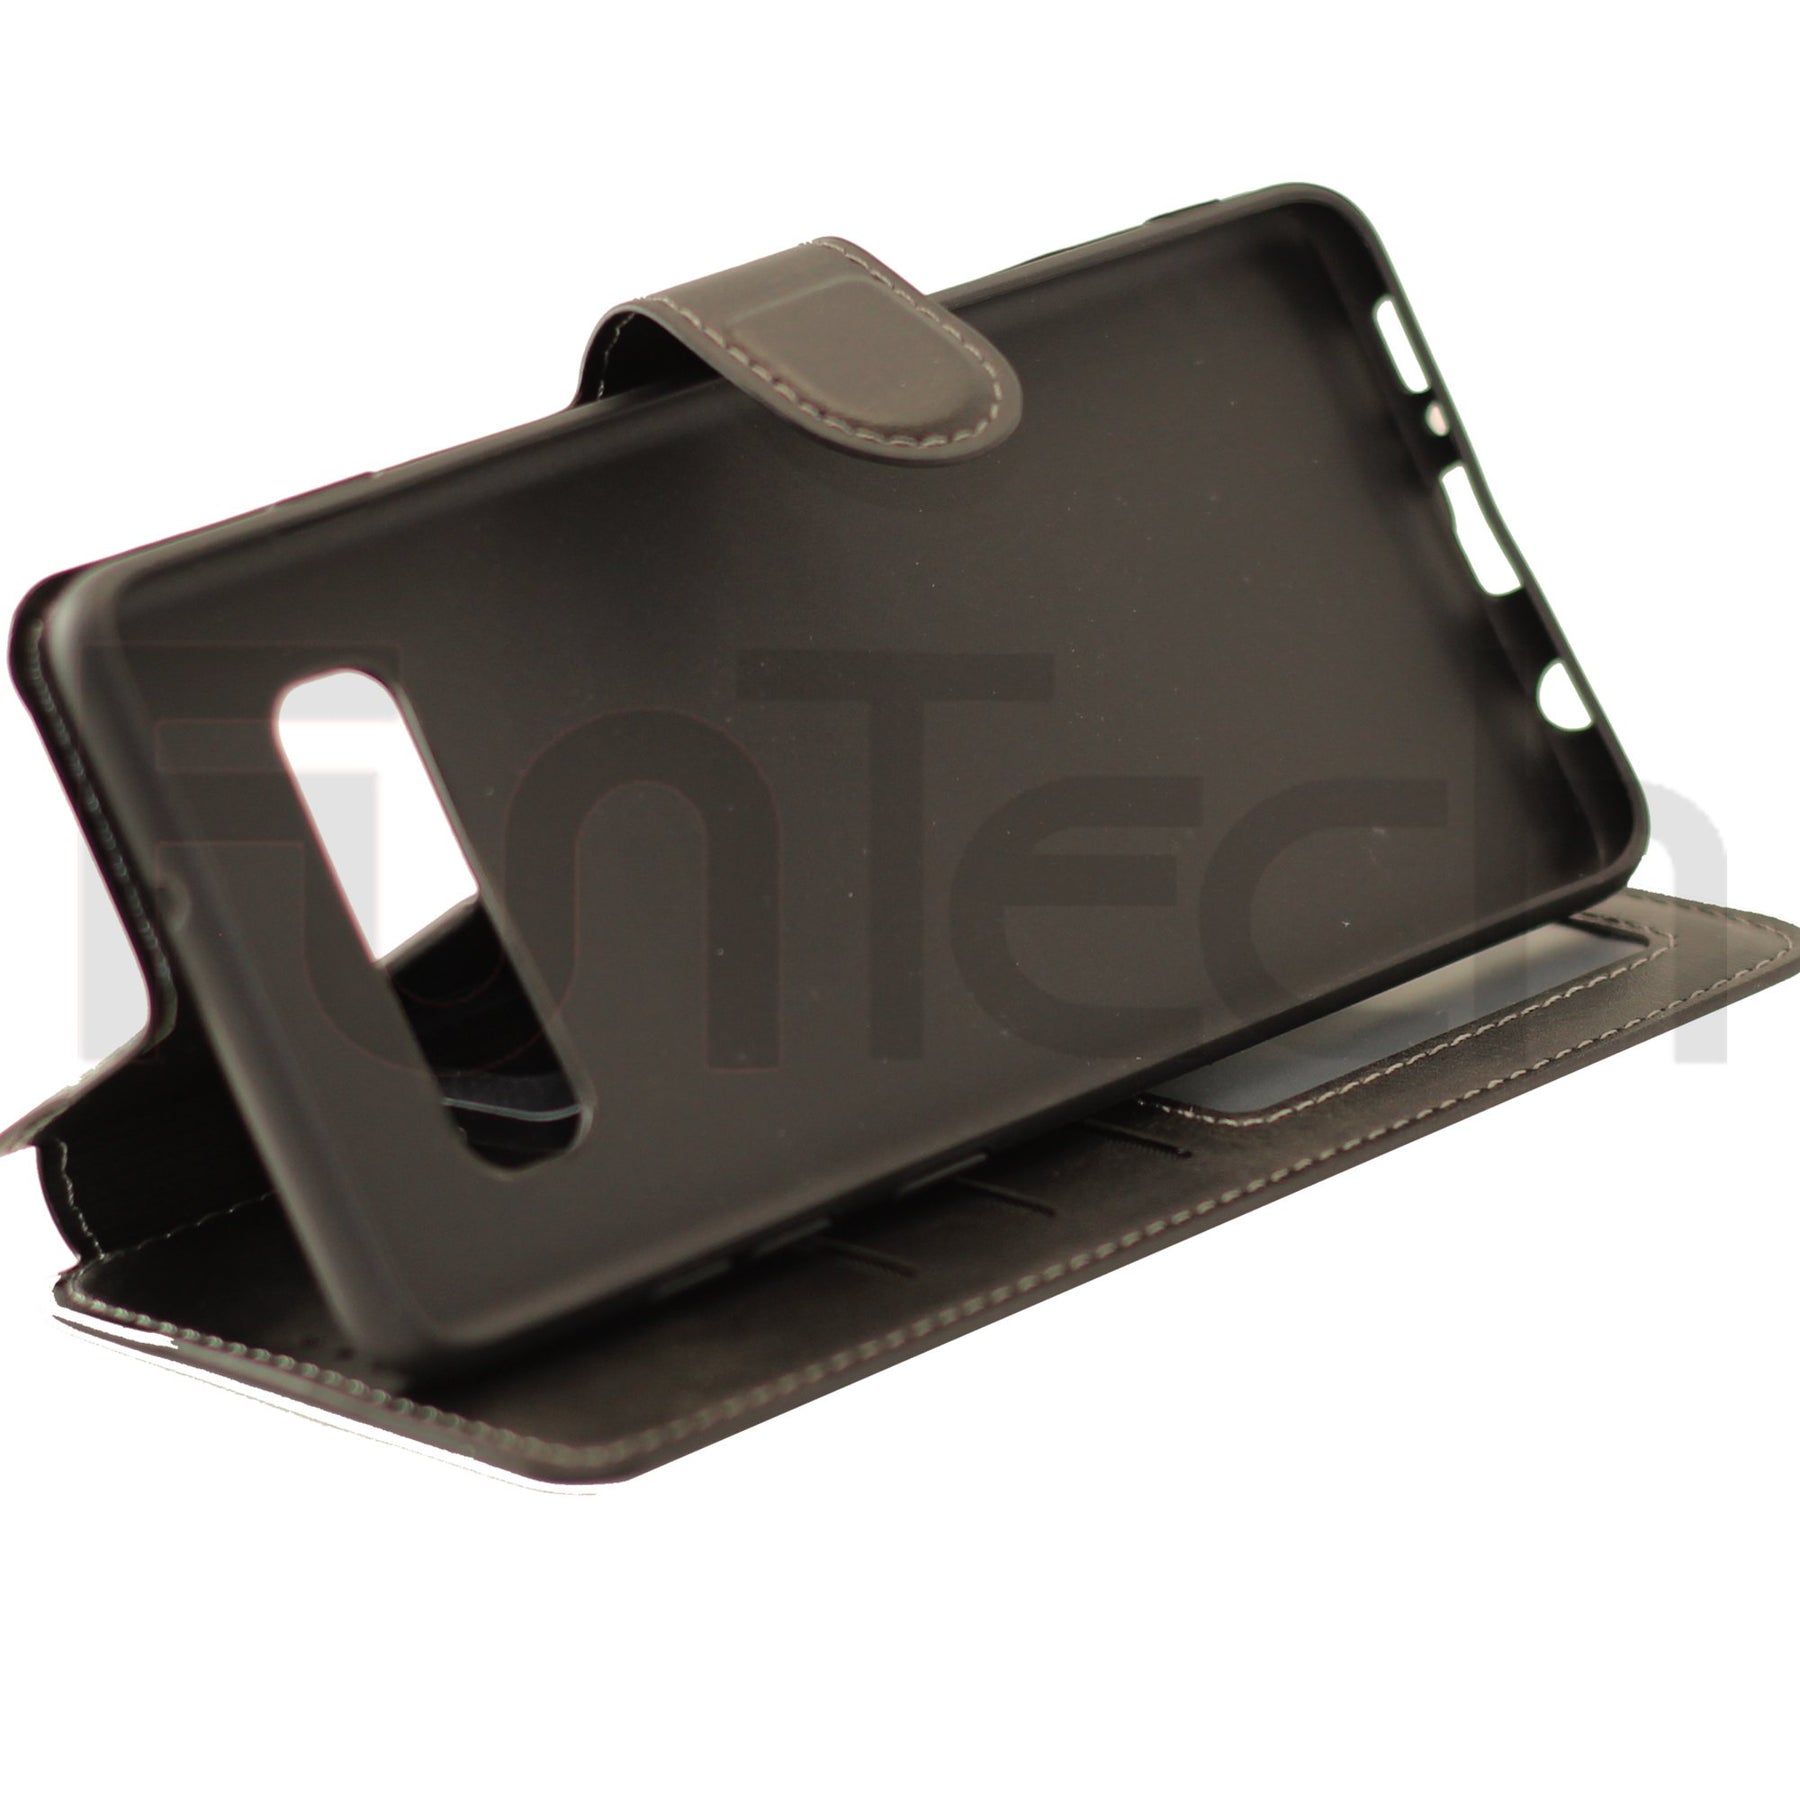 Samsung S10 Plus Leather Wallet Case Color Black